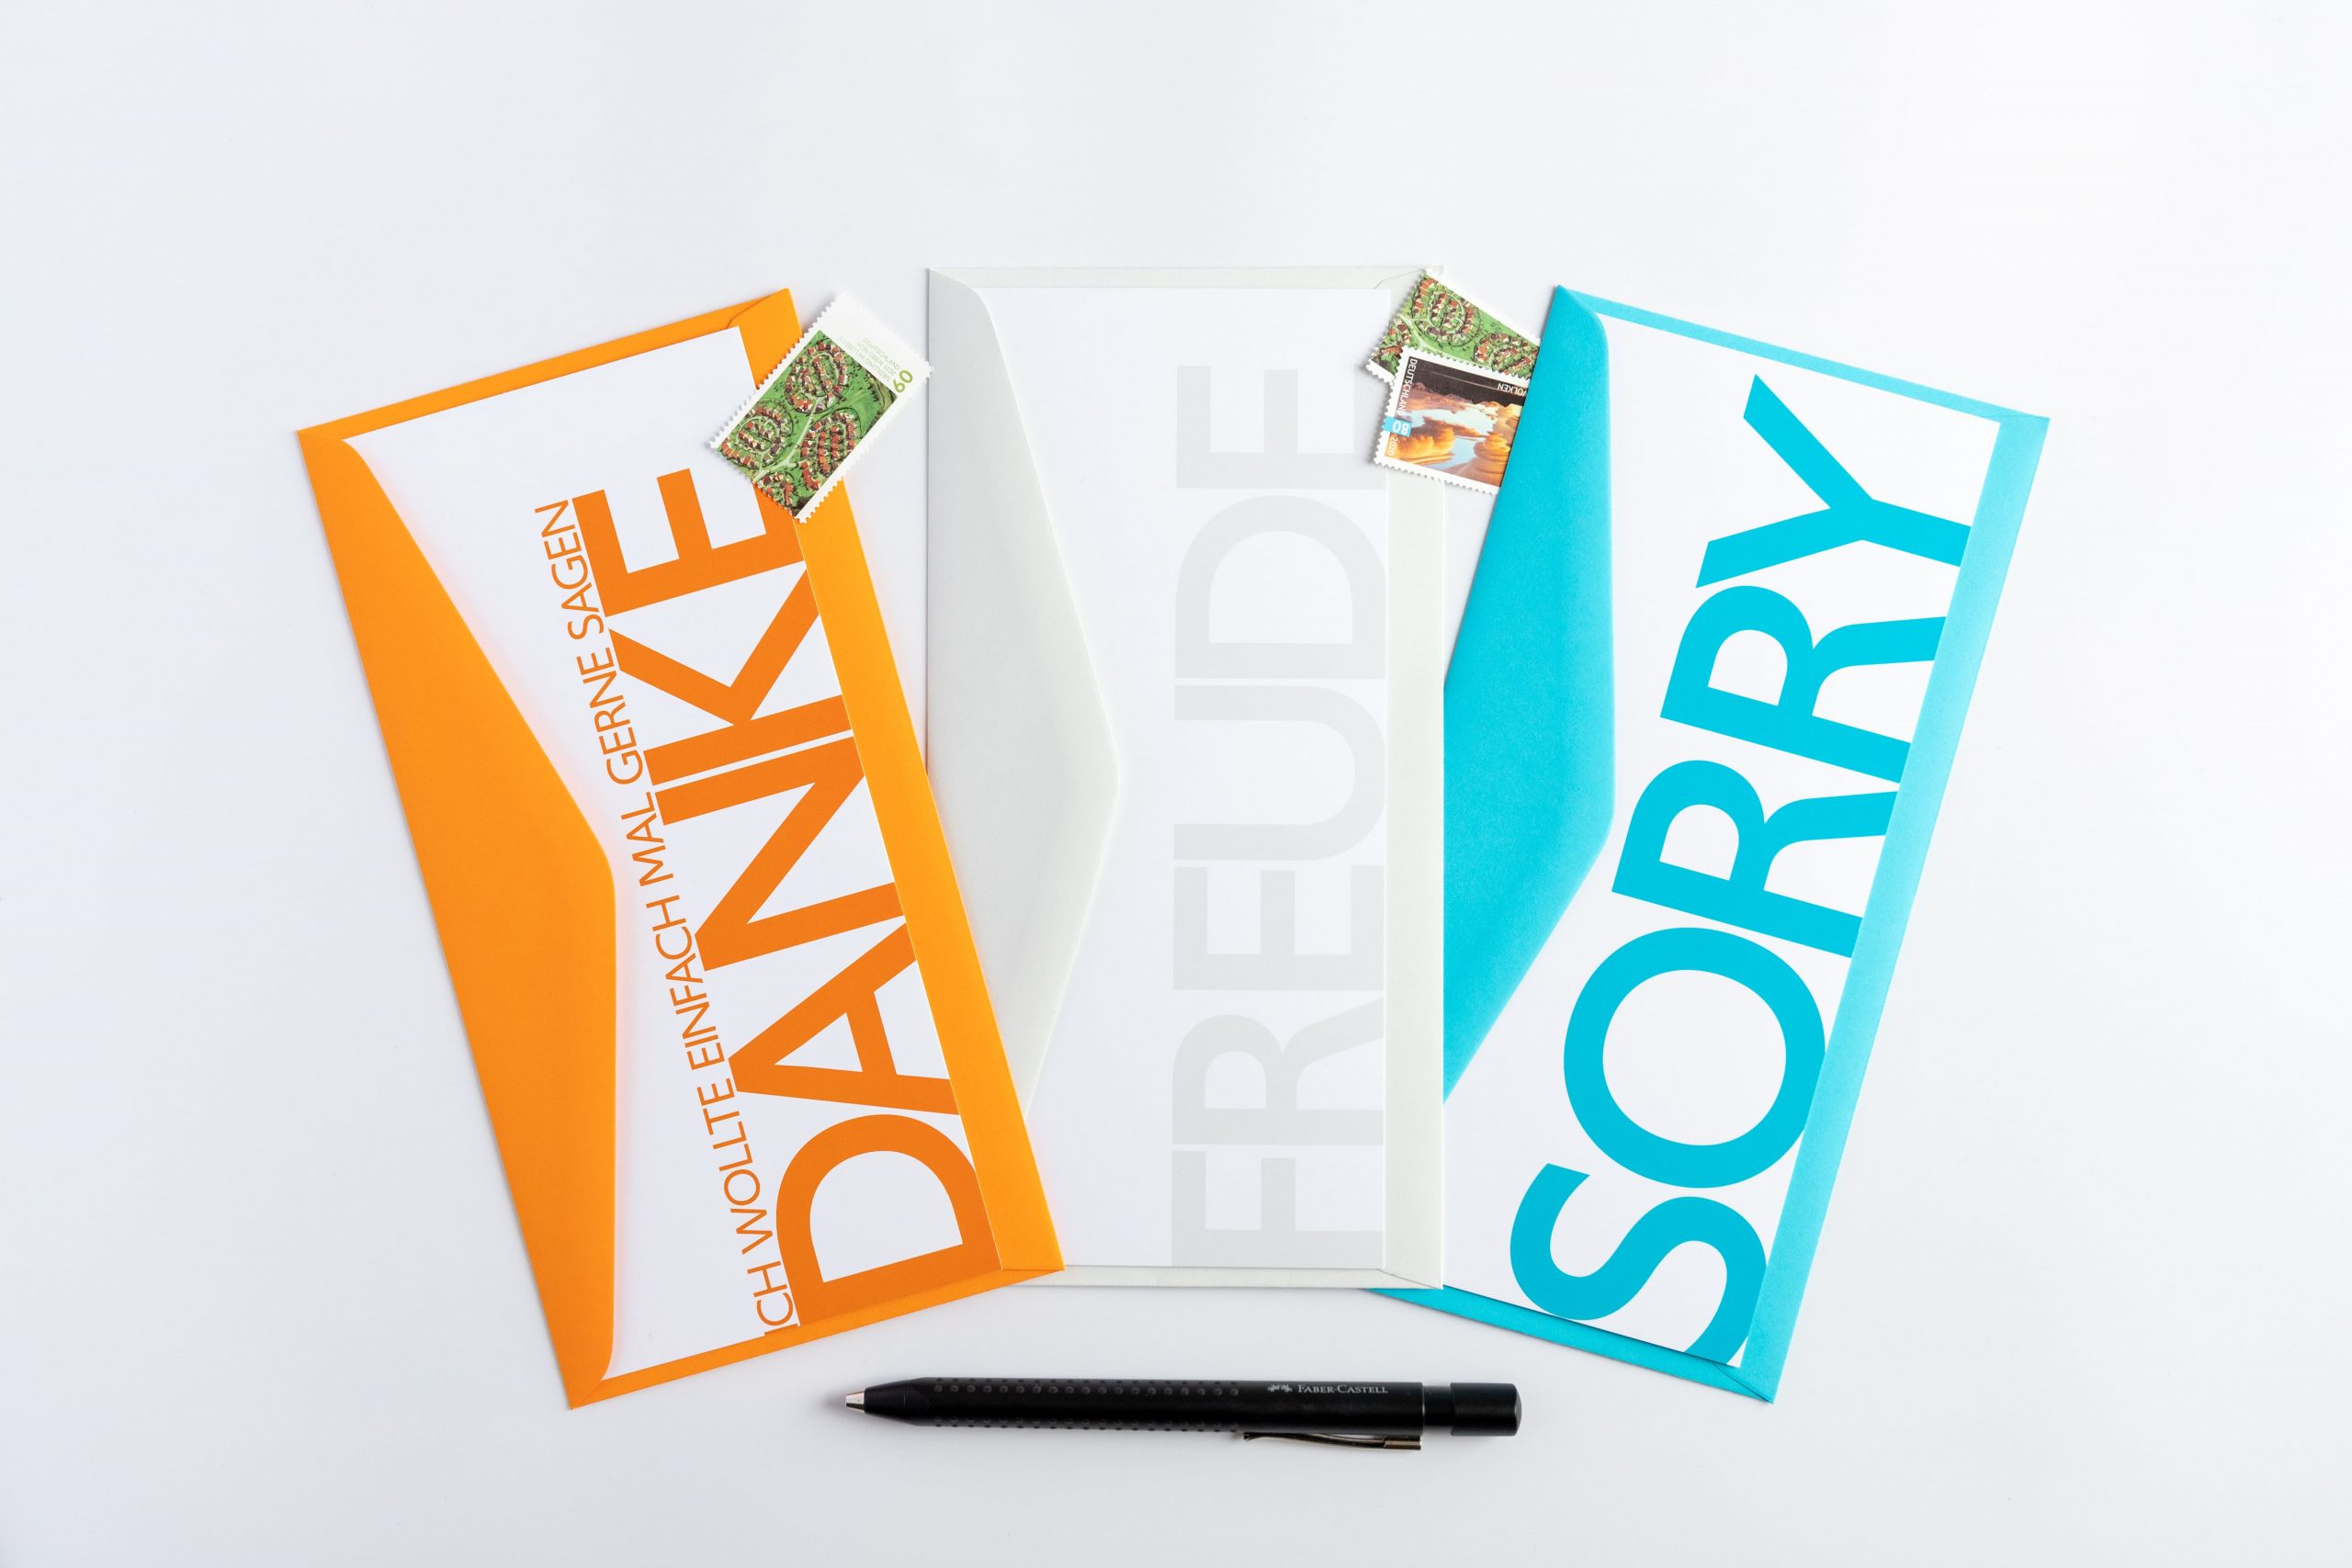 Grußkartenset "SOS" bestehend aus den Wörterkarten "DANKE", "FREUDE" und "SORRY"